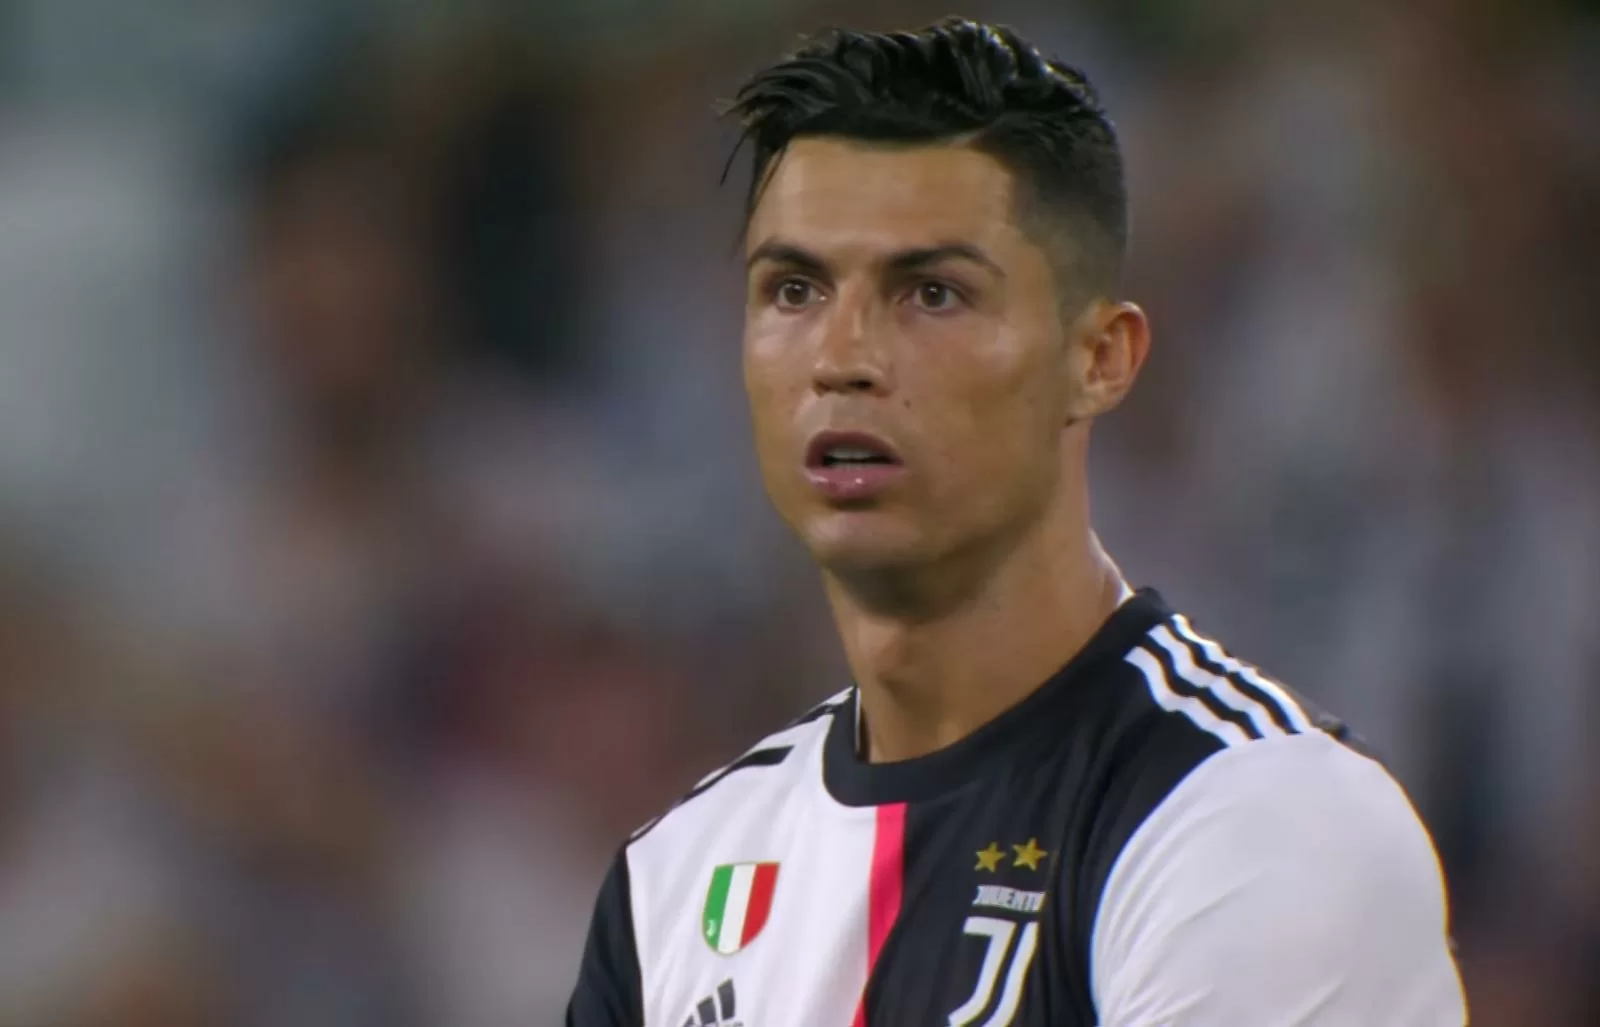 TS- Ronaldo decisivo anche in fase difensiva